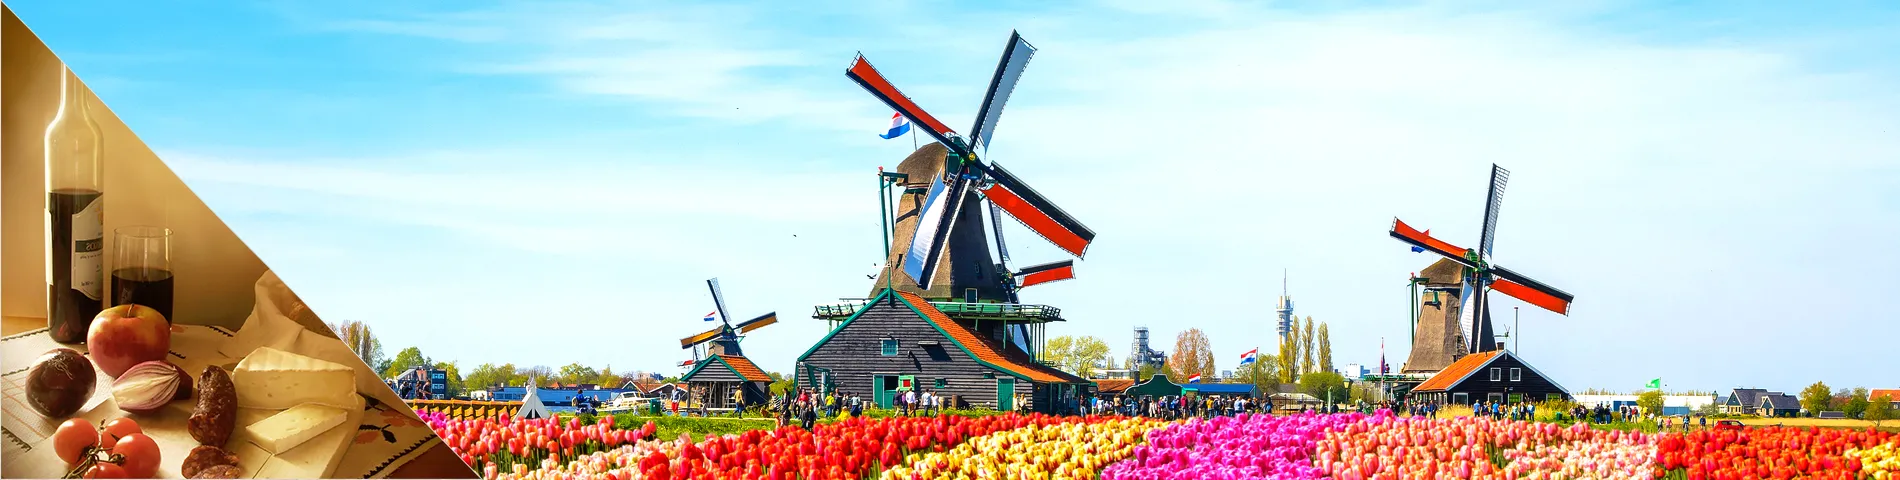 Nederländerna - Holländska & kultur